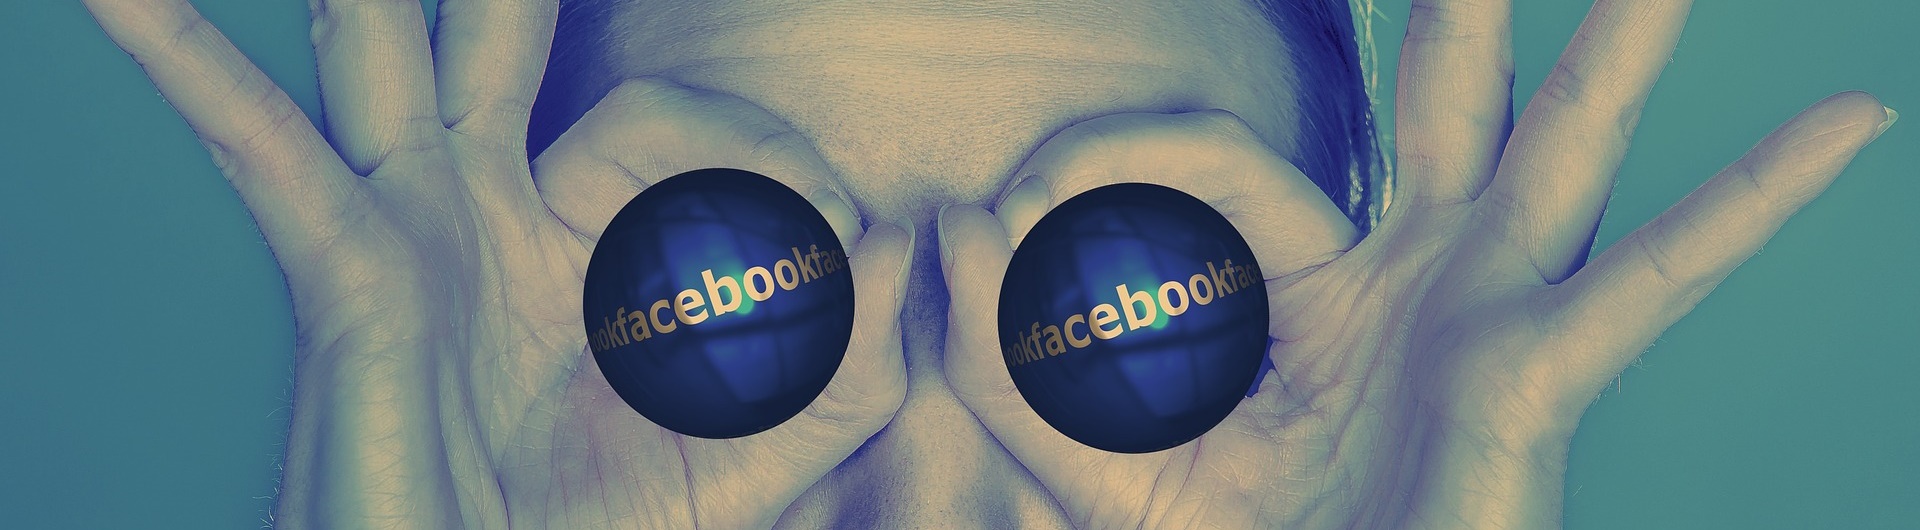 Dlaczego bojkot Facebooka nie wypalił